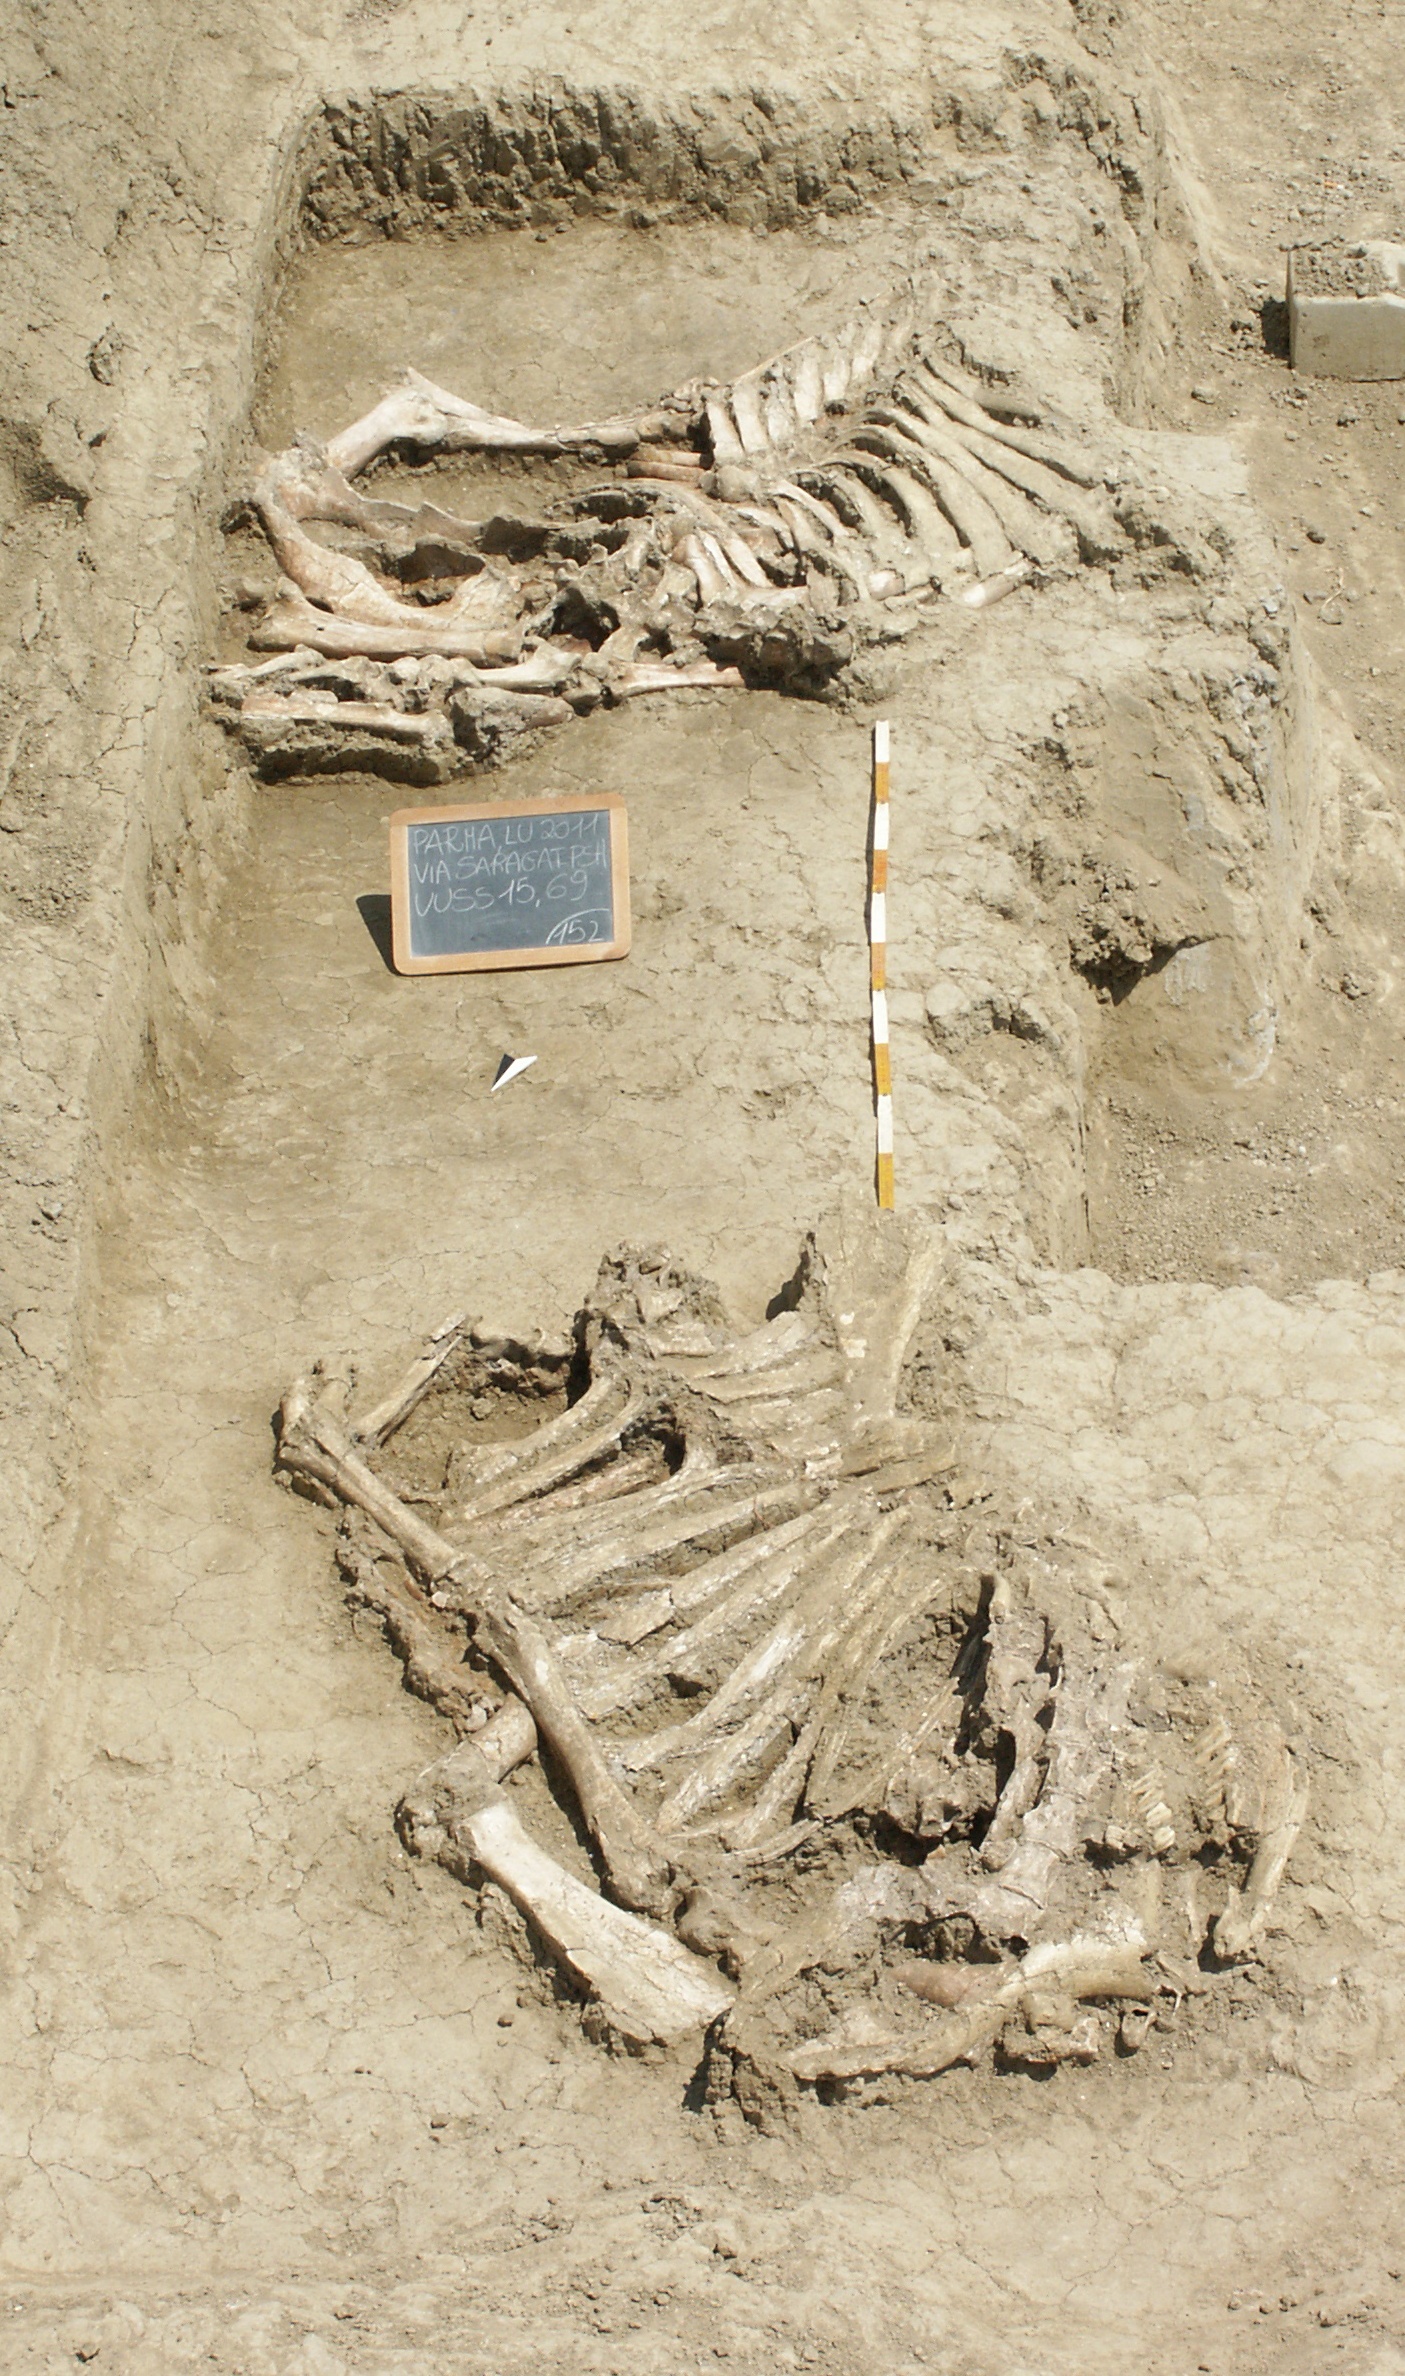 Resti di quadrupedi in deposizione rituale in corso di scavo, da via Saragat - epoca arcaica